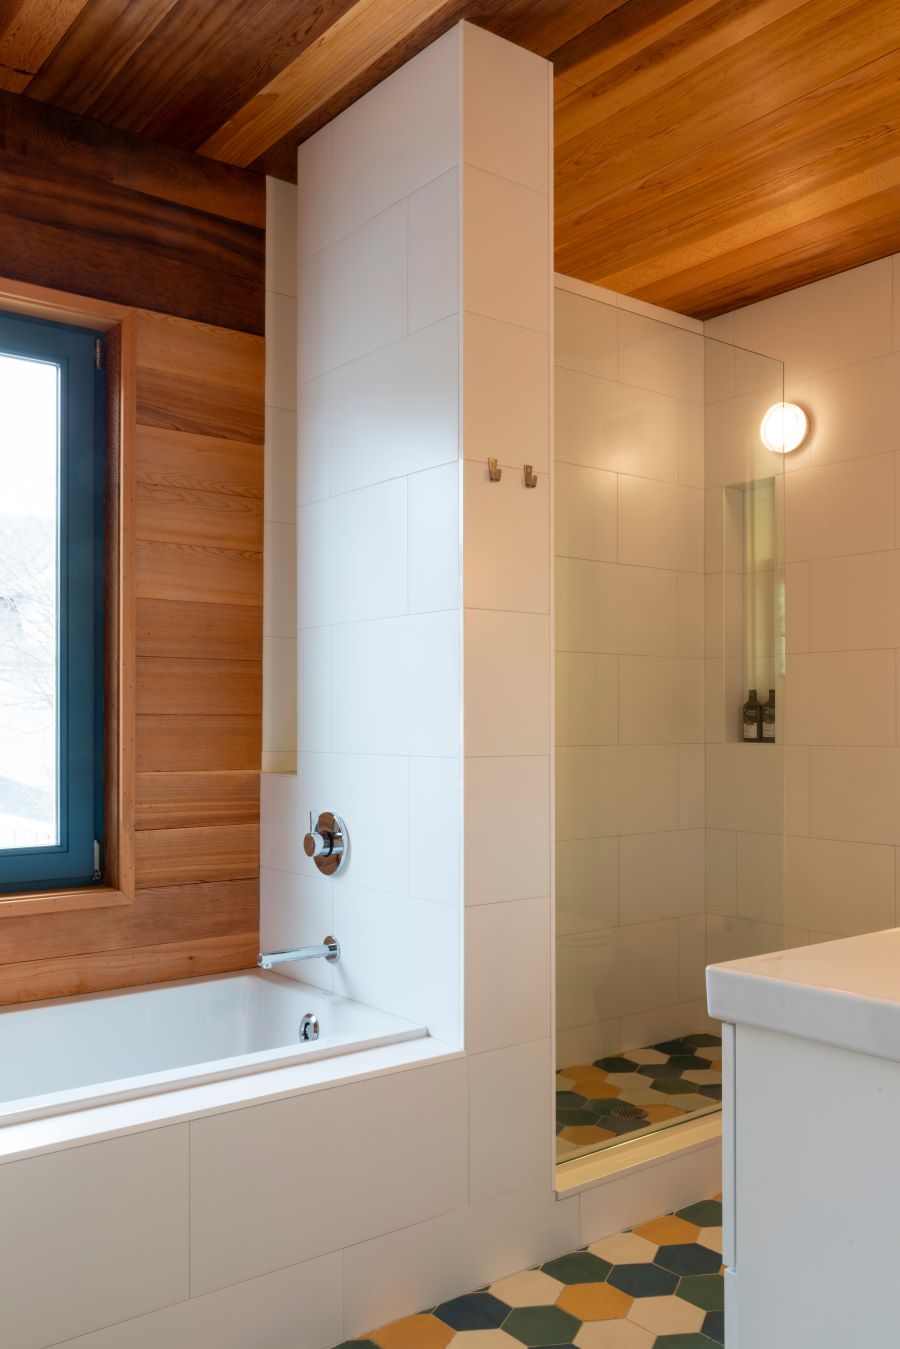 Časť kúpeľne s vaňou, sprchovým kútom a farebnými dlaždicami.